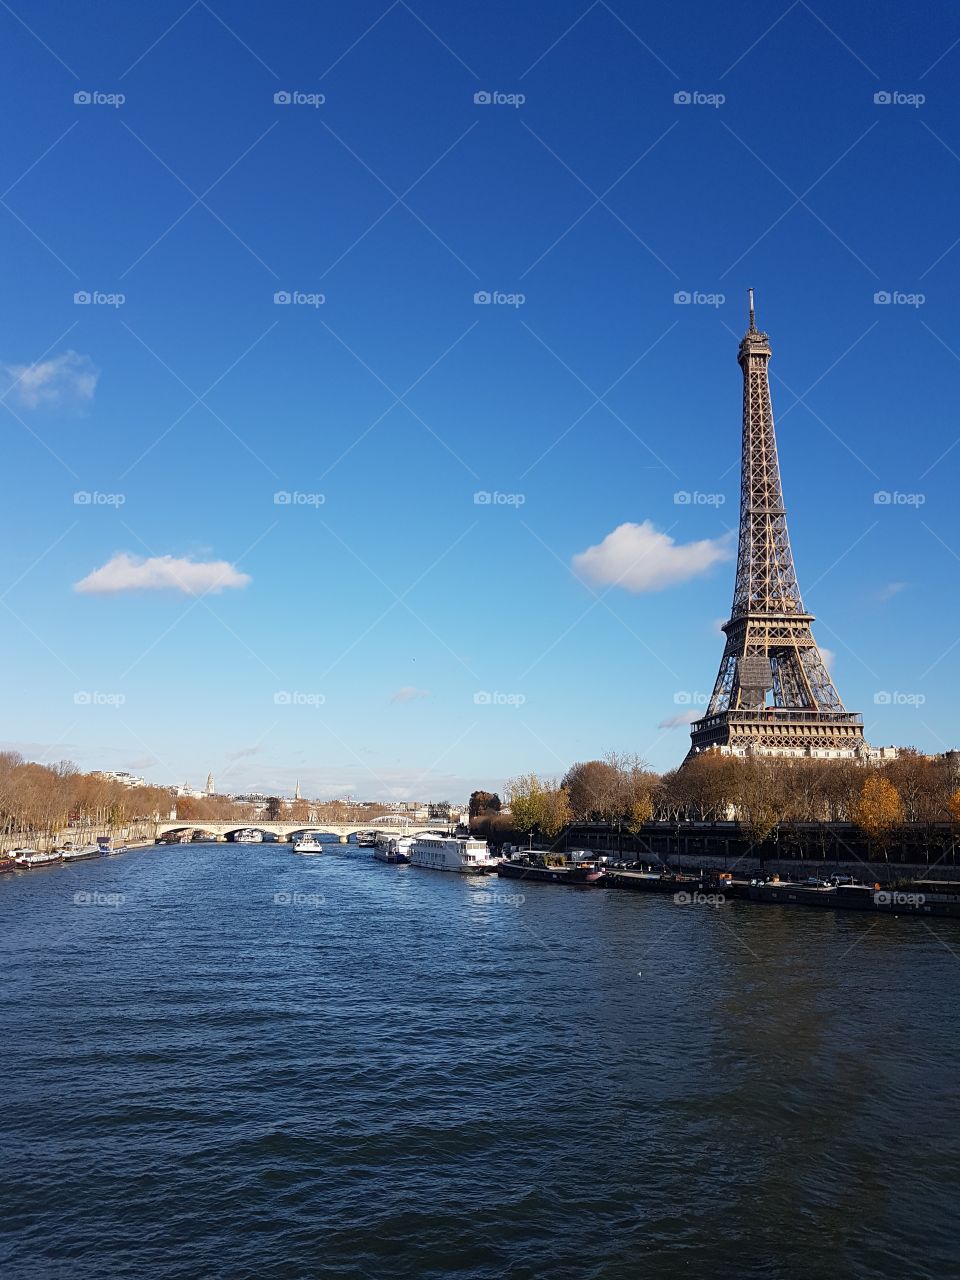 Eiffel Tower with River Seine